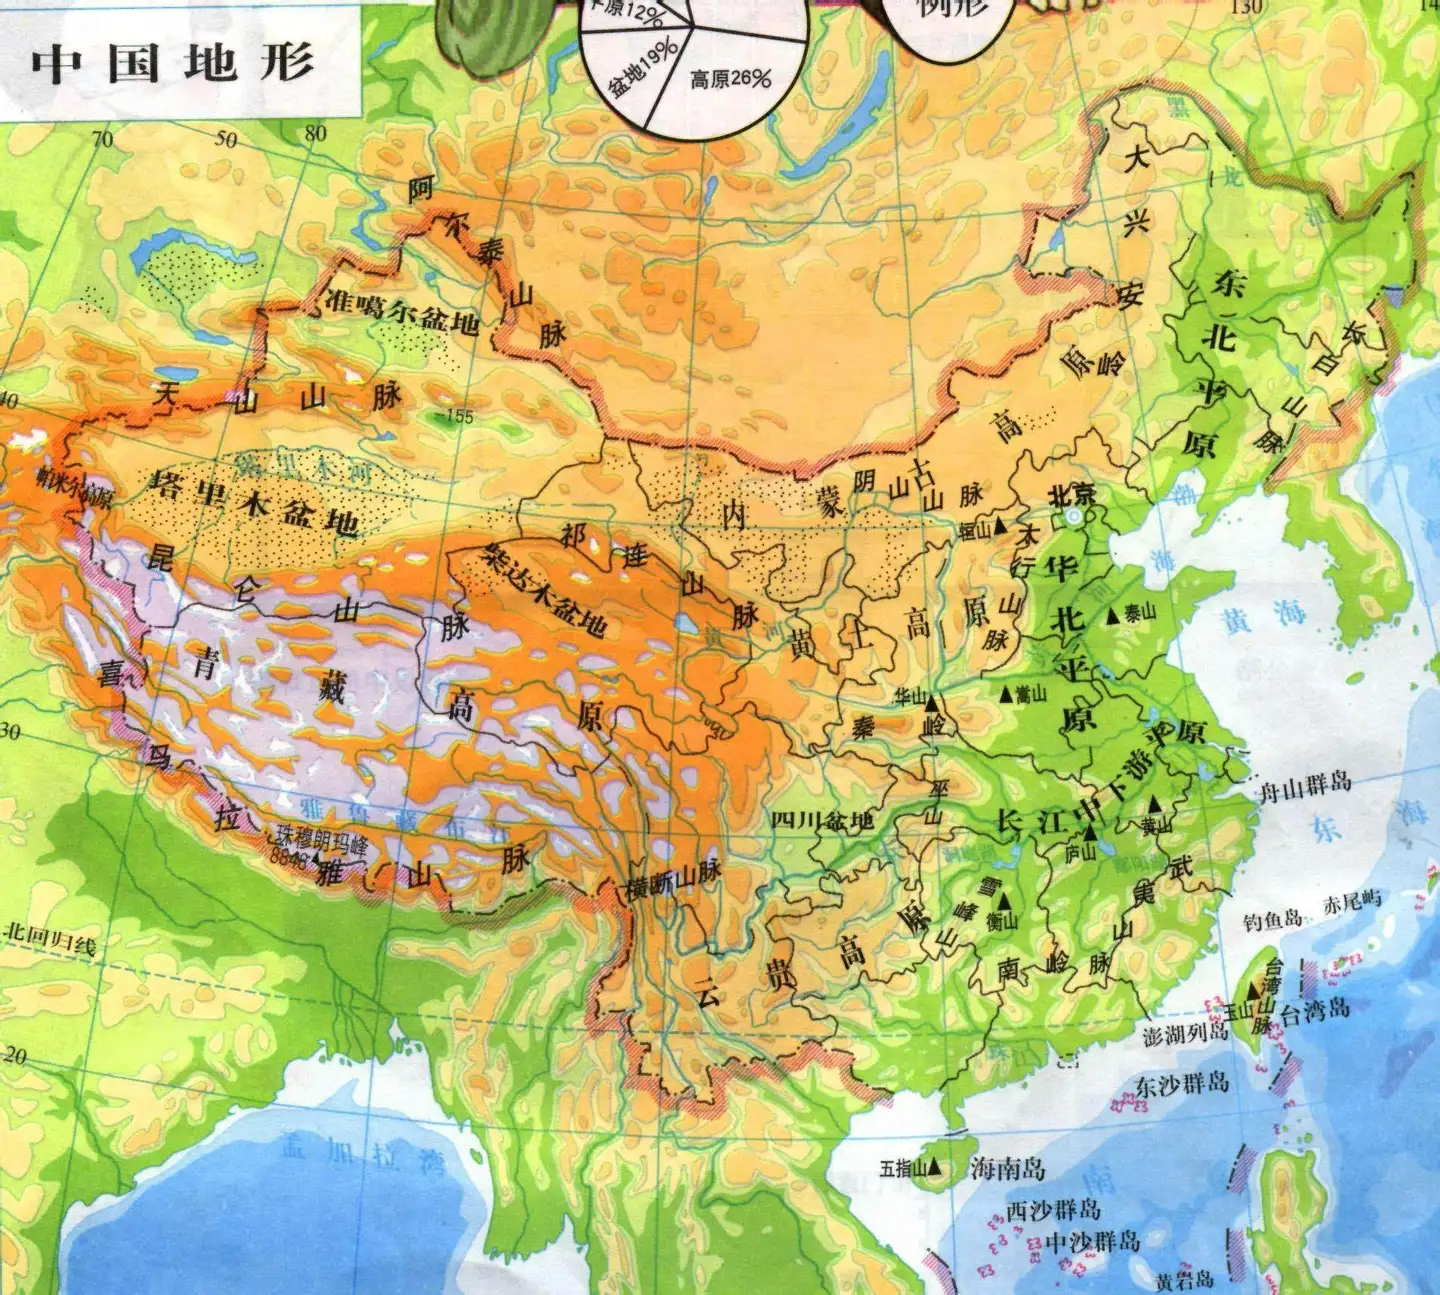 为什么大多数中原王朝能稳固占领河西走廊，地图上突出来的狭长的地方